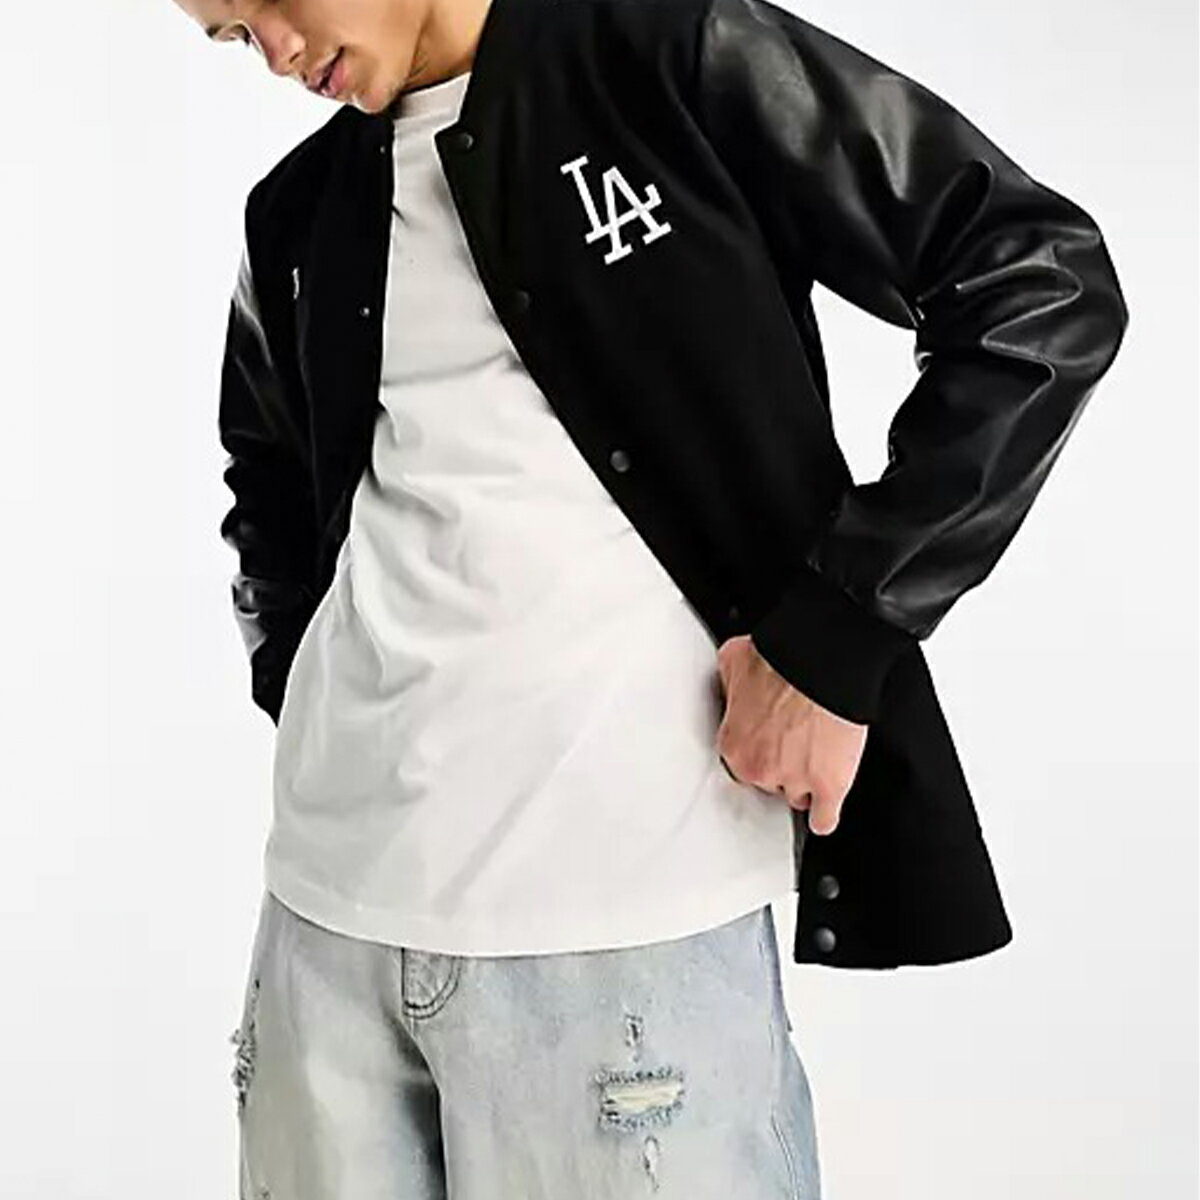 LA <strong>ドジャース</strong> スタジャン 47 Brand MLB オフィシャル ファナティクス ブランド ジャケット NIKE ナイキ USサイズ 海外限定 正規品[衣類]ユ00572